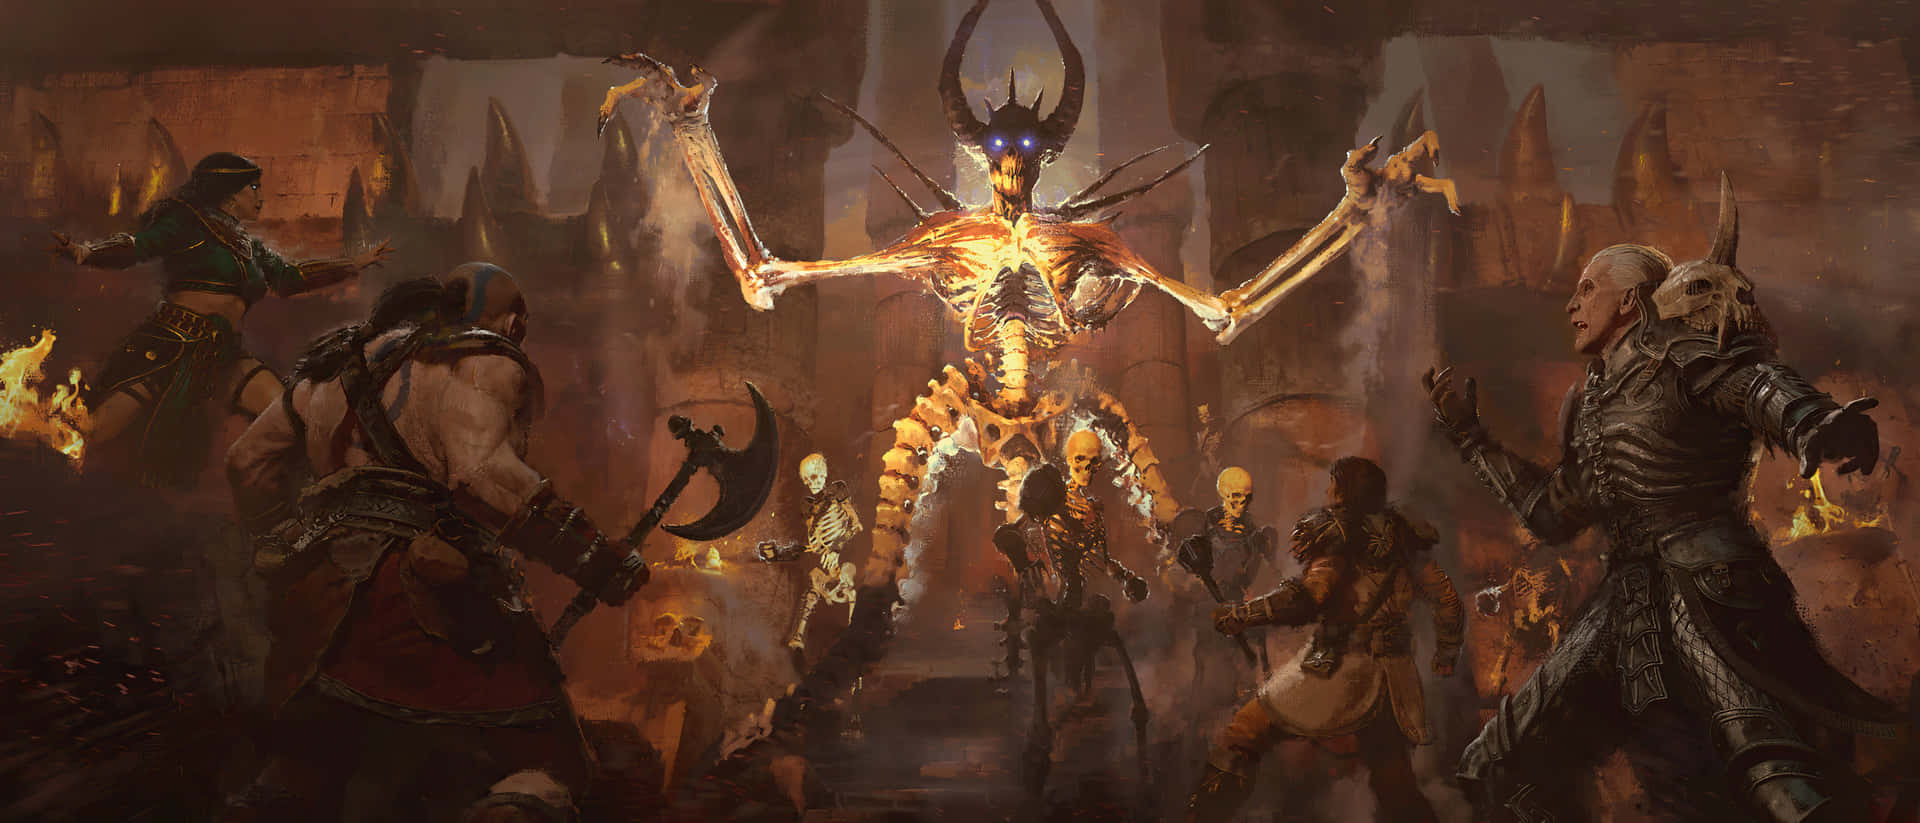 Åbn legendariske skatte med denne forbedrede genudgivelse af Diablo 2. Wallpaper